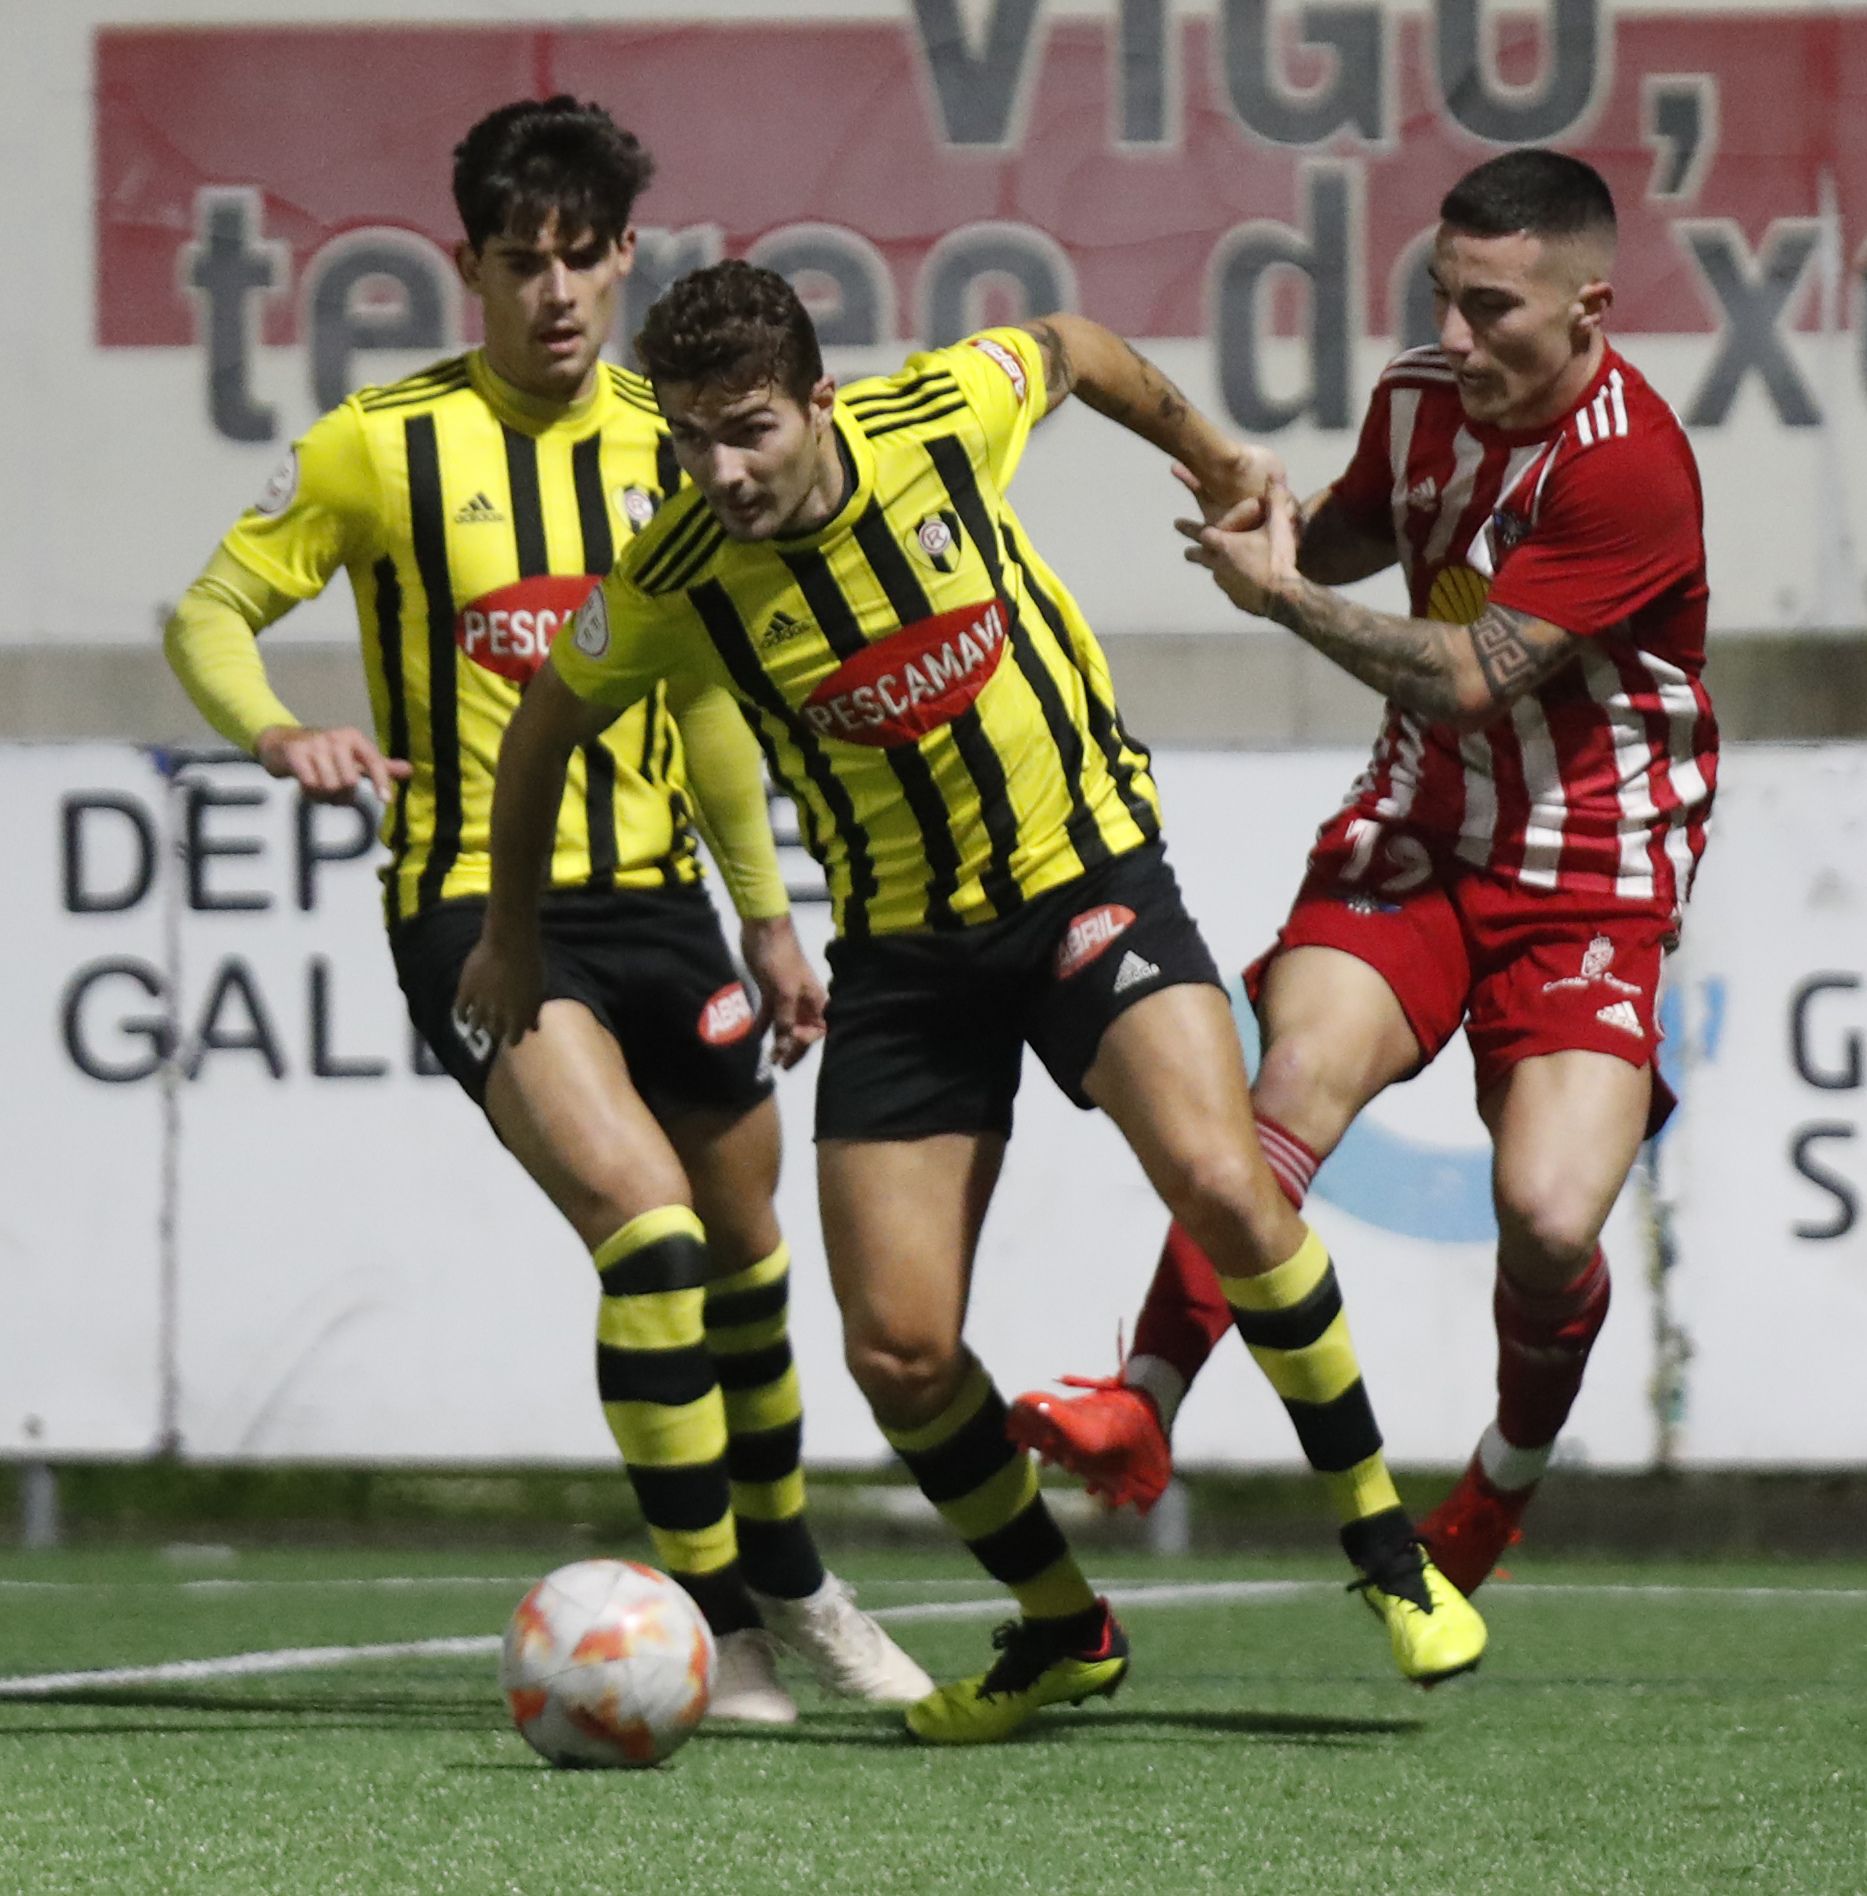 El jugador del Alondras Raúl Paz forcejea con un futbolista del Rápido de Bouzas en el duelo del sábado.